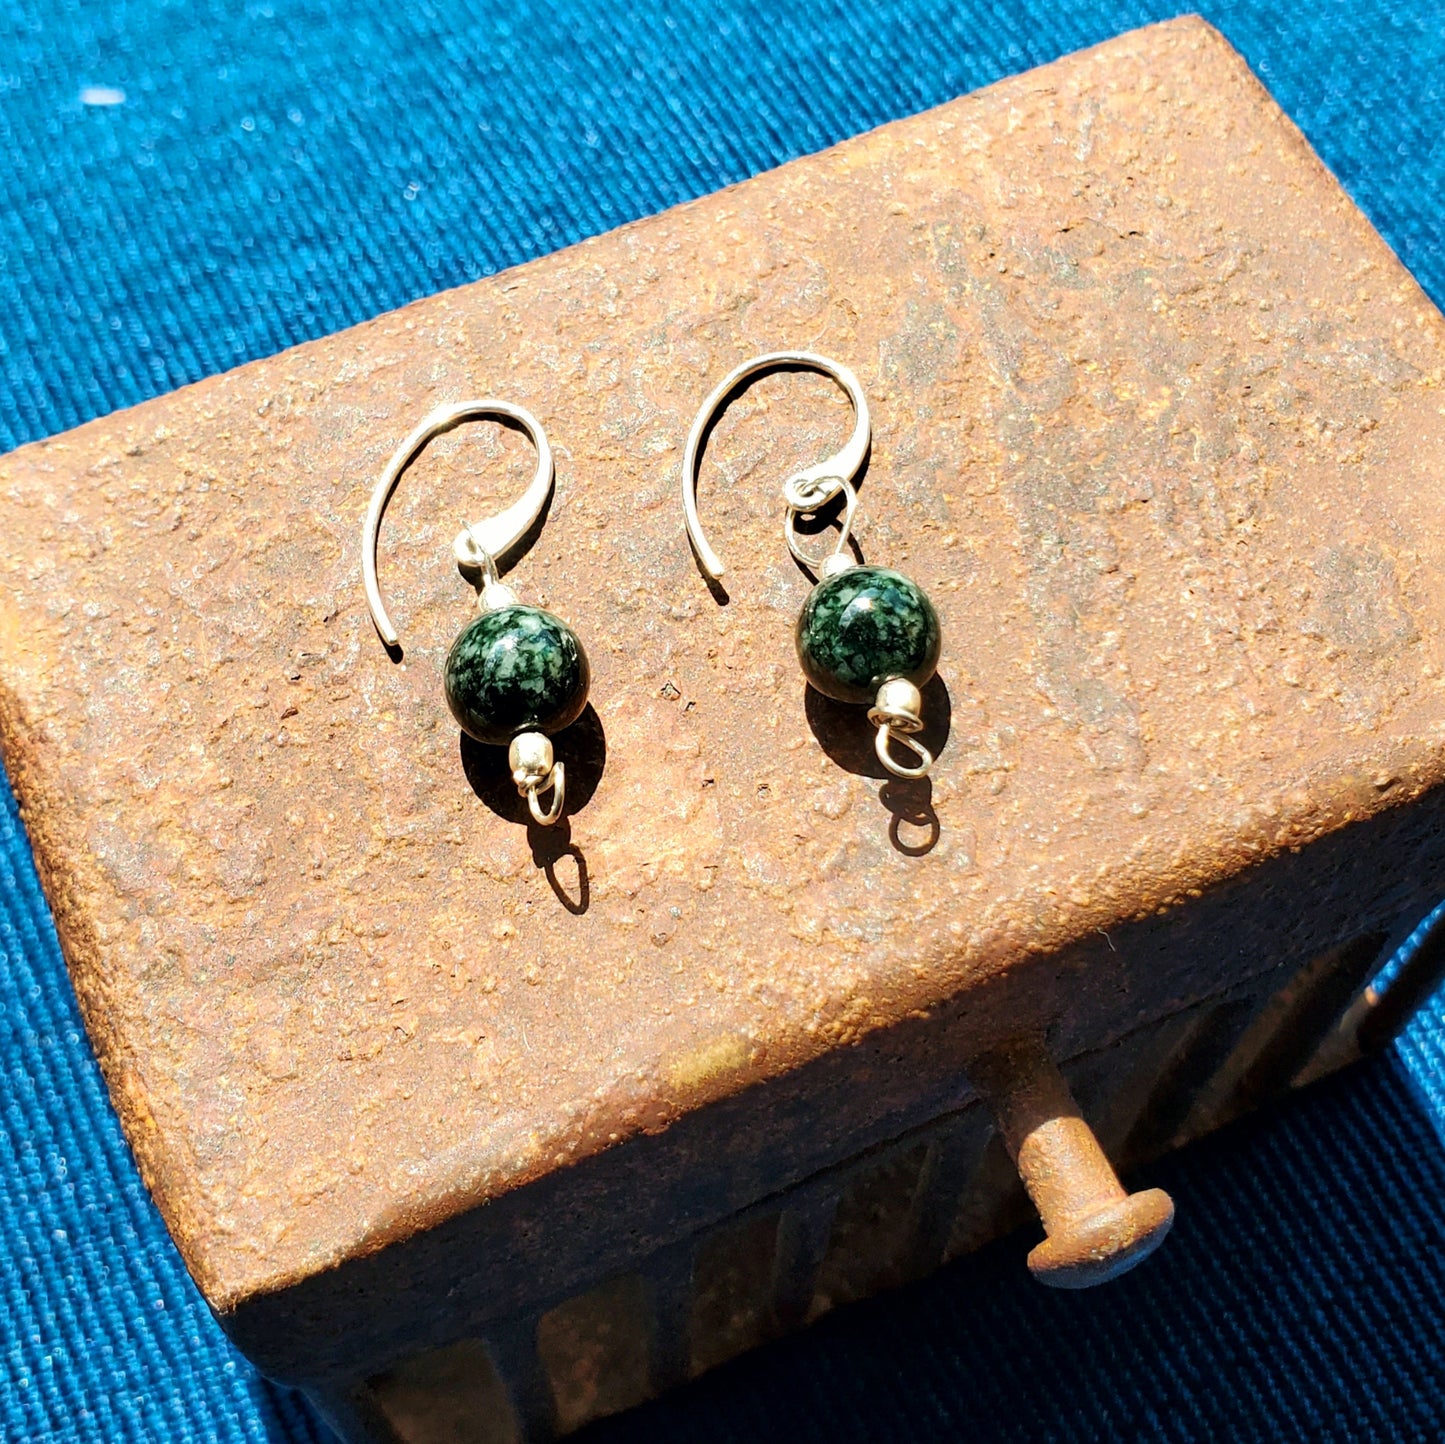 Jade earrings, mayan style jewelry, jadeite earrings, green earrings, silver and jade jewelry, texture, roasted texture, jadeite and roast